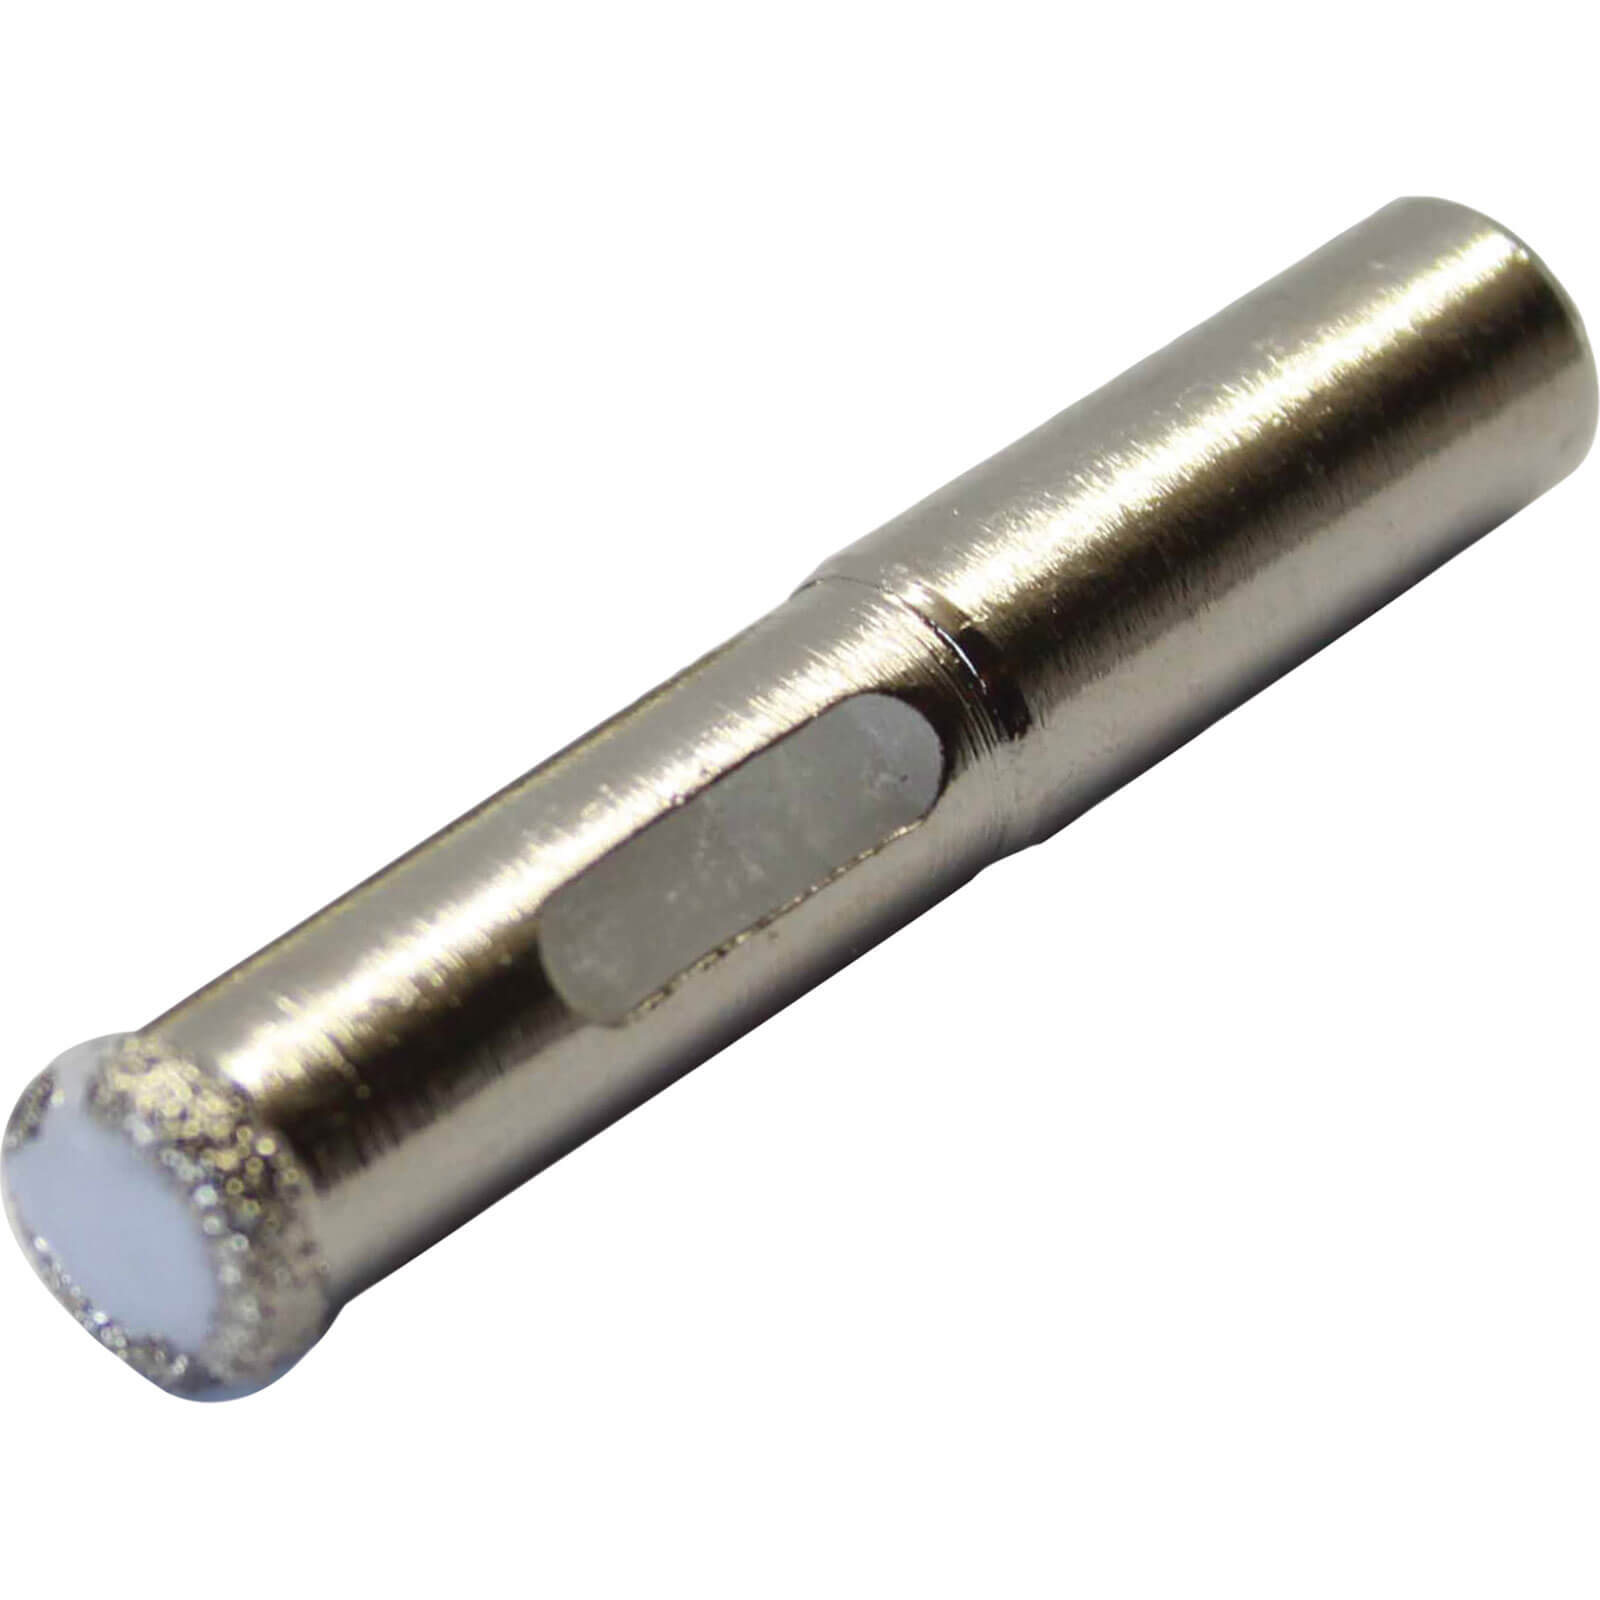 Photo of Vitrex Wax Filled Dry Diamond Drill Bit 10mm